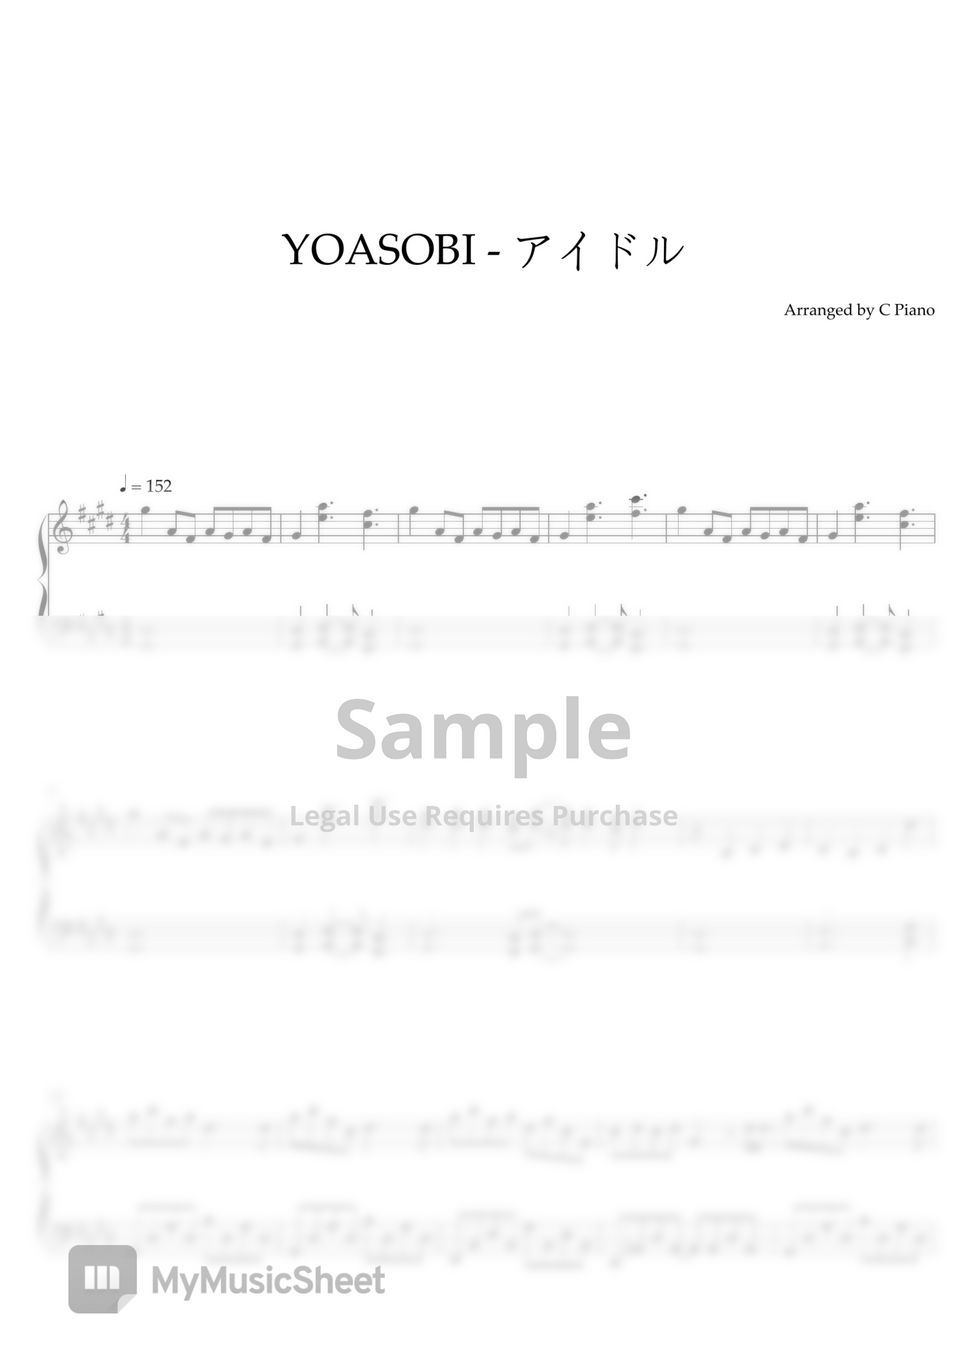 YOASOBI - Idol アイドル (推しの子 OP) by C Piano